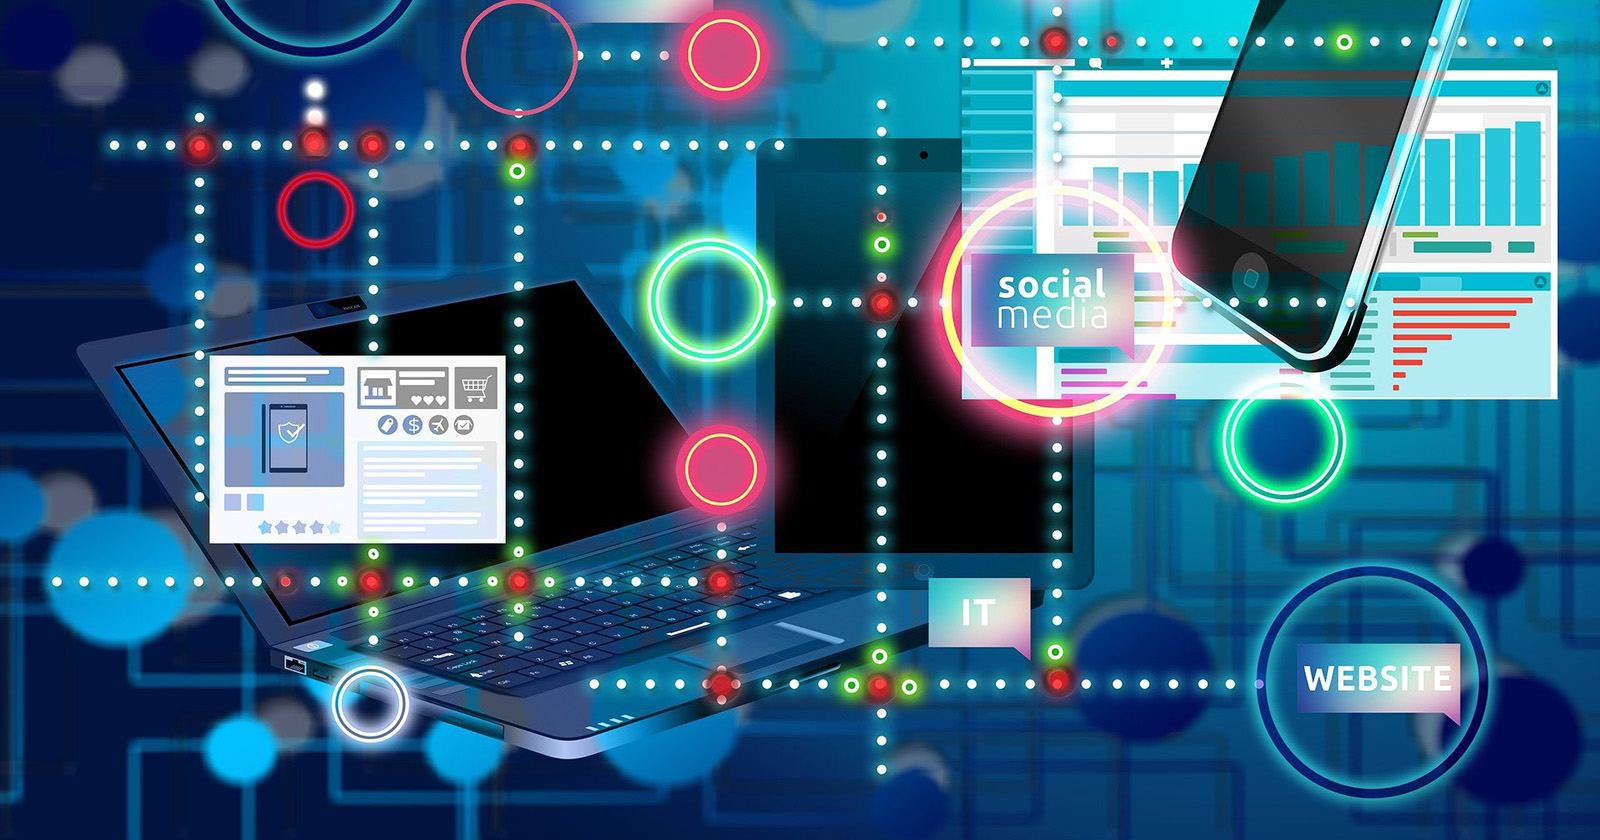  Grafika z laptopem, tabletem, smartfonem, wykresami oraz kropkami symbolizującymi połączenia pomiędzy napisami "website", "IT" i "social media"